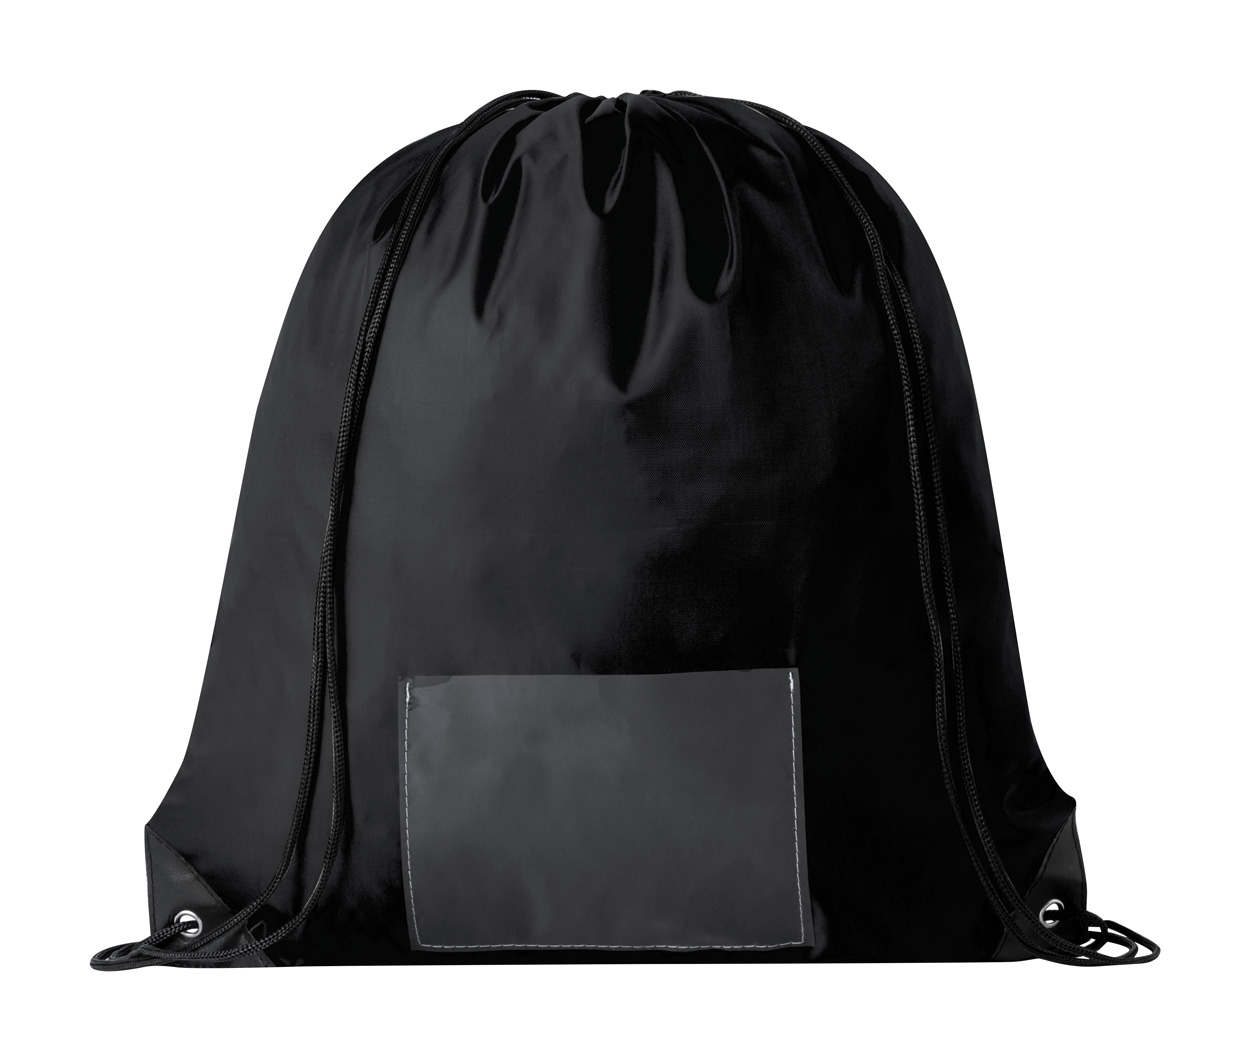 Selasi bag for download - black